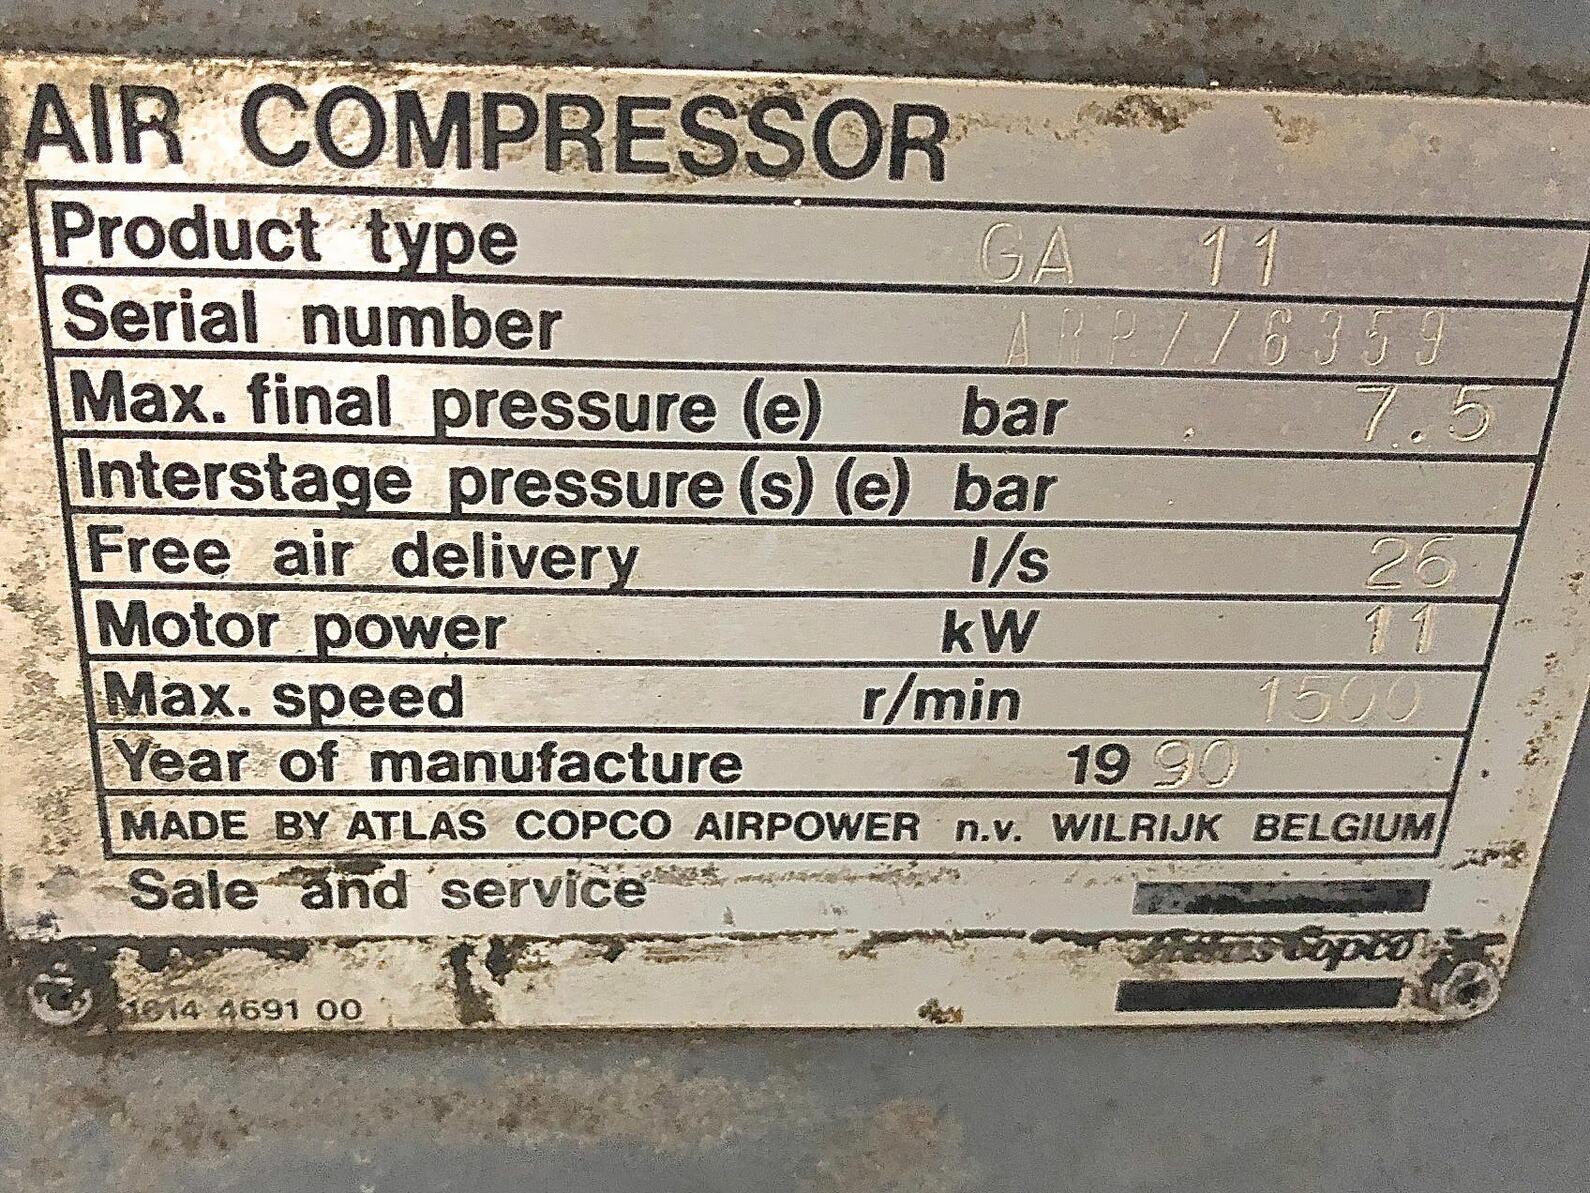 Compressor - GA 11 model